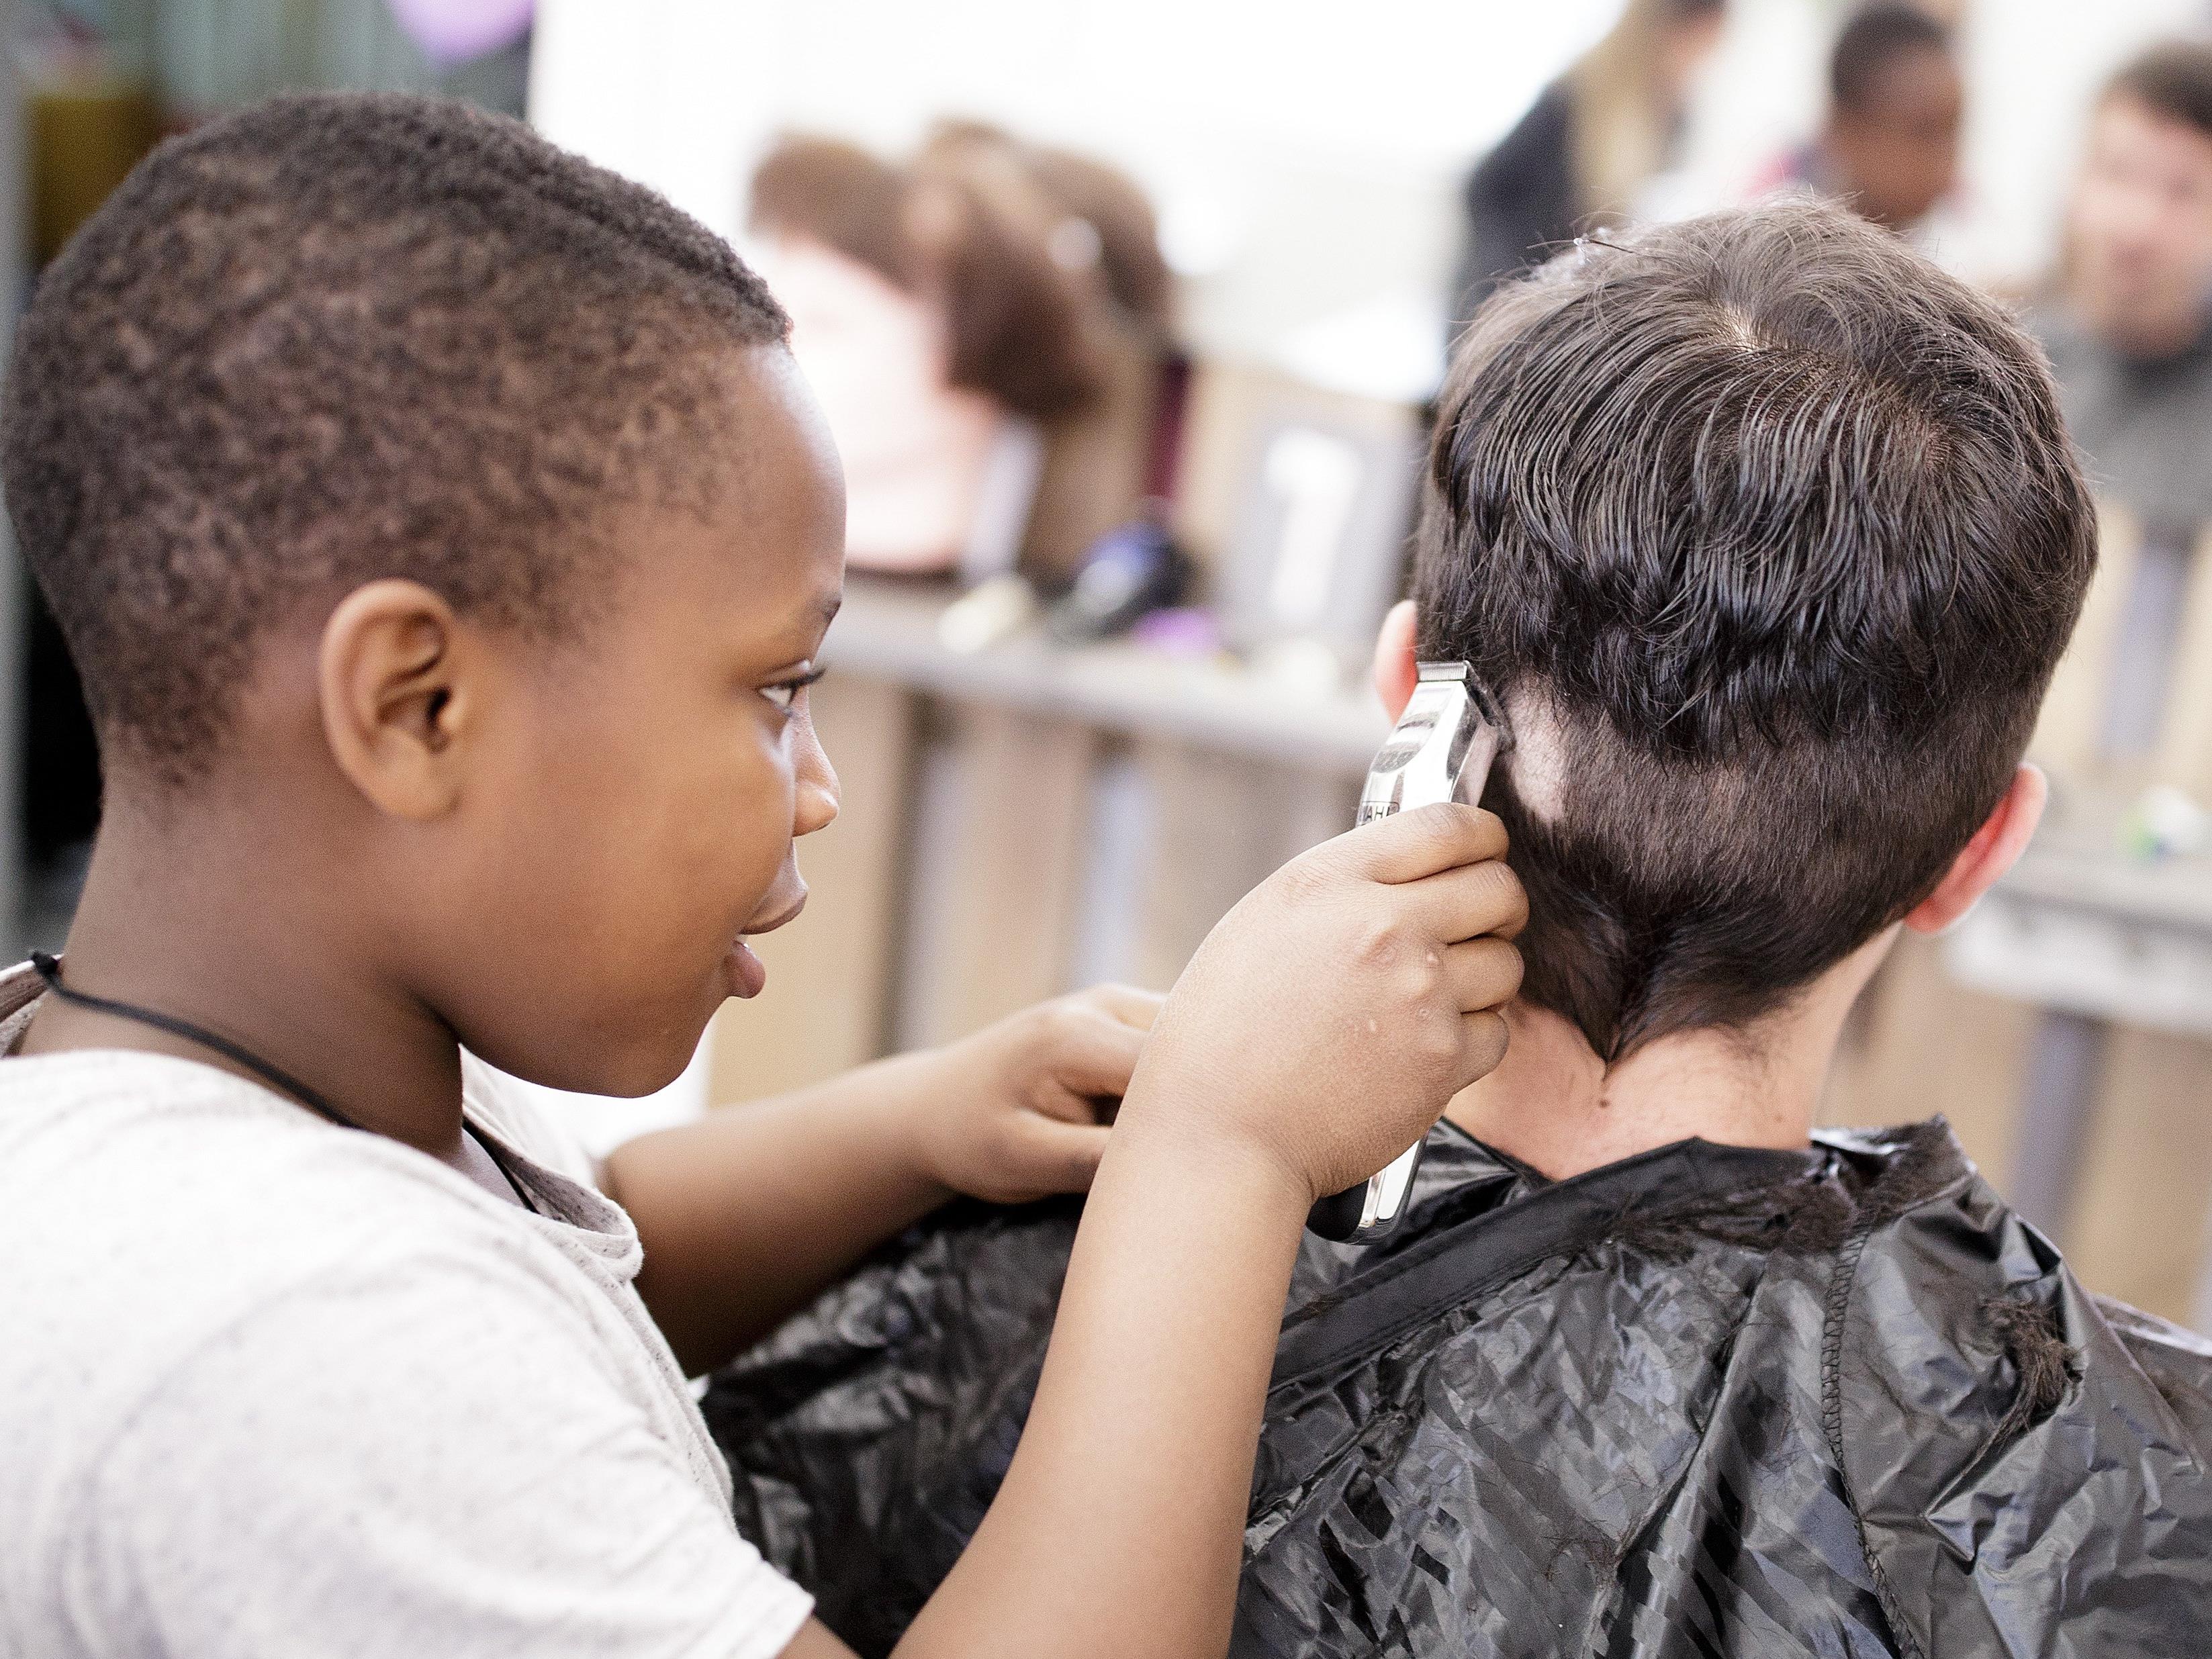 Gut besucht: "Haircuts by Children" im Zuge der Wiener Festwochen